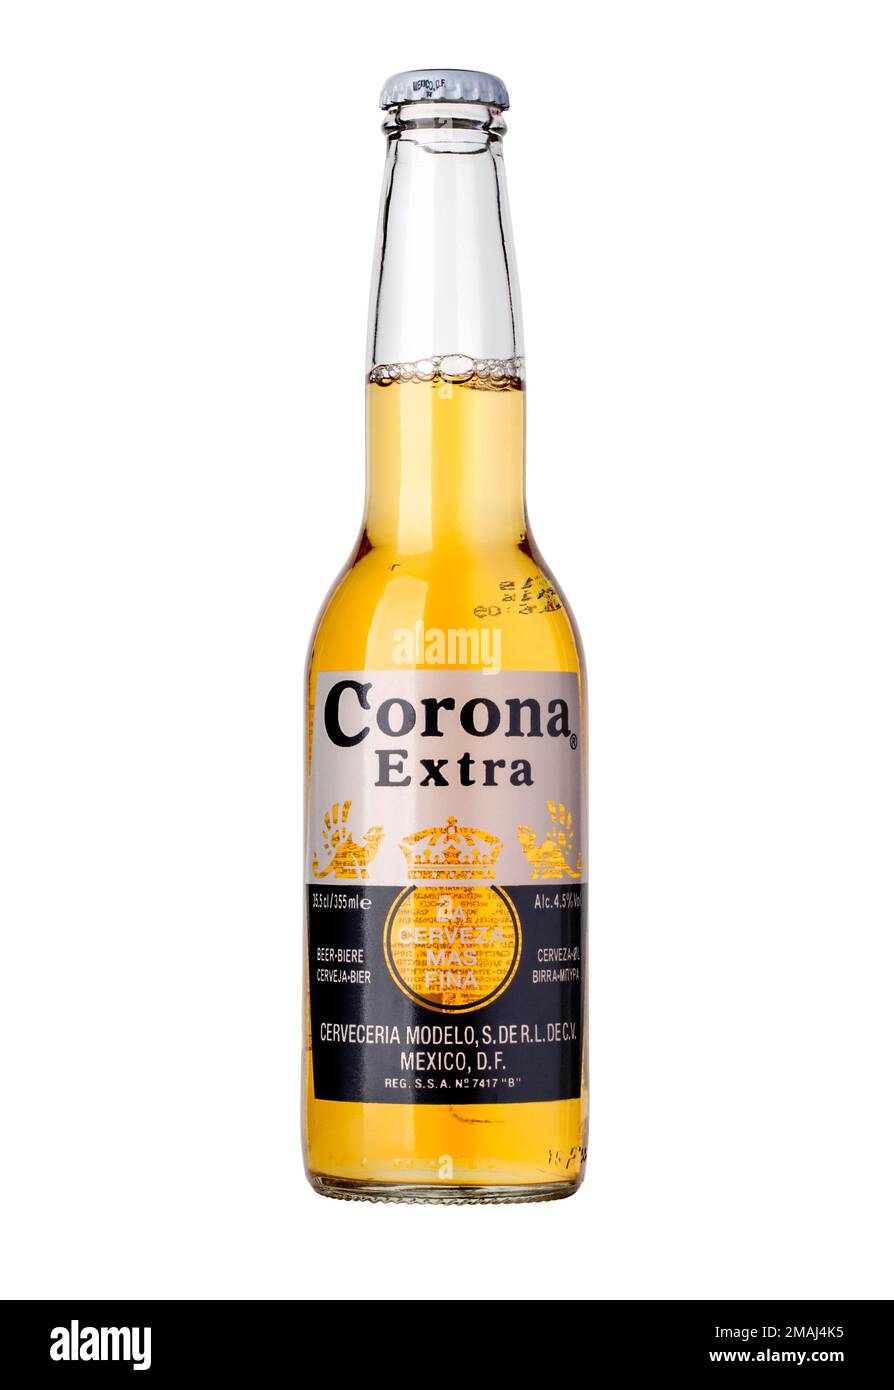 CHISINAU, MOLDAVIE - 04 janvier 2016: Photo d'une bouteille de Corona Extra Beer. Corona, produit par Grupo Modelo avec Anheuser Busch InBev, est le plus important Banque D'Images